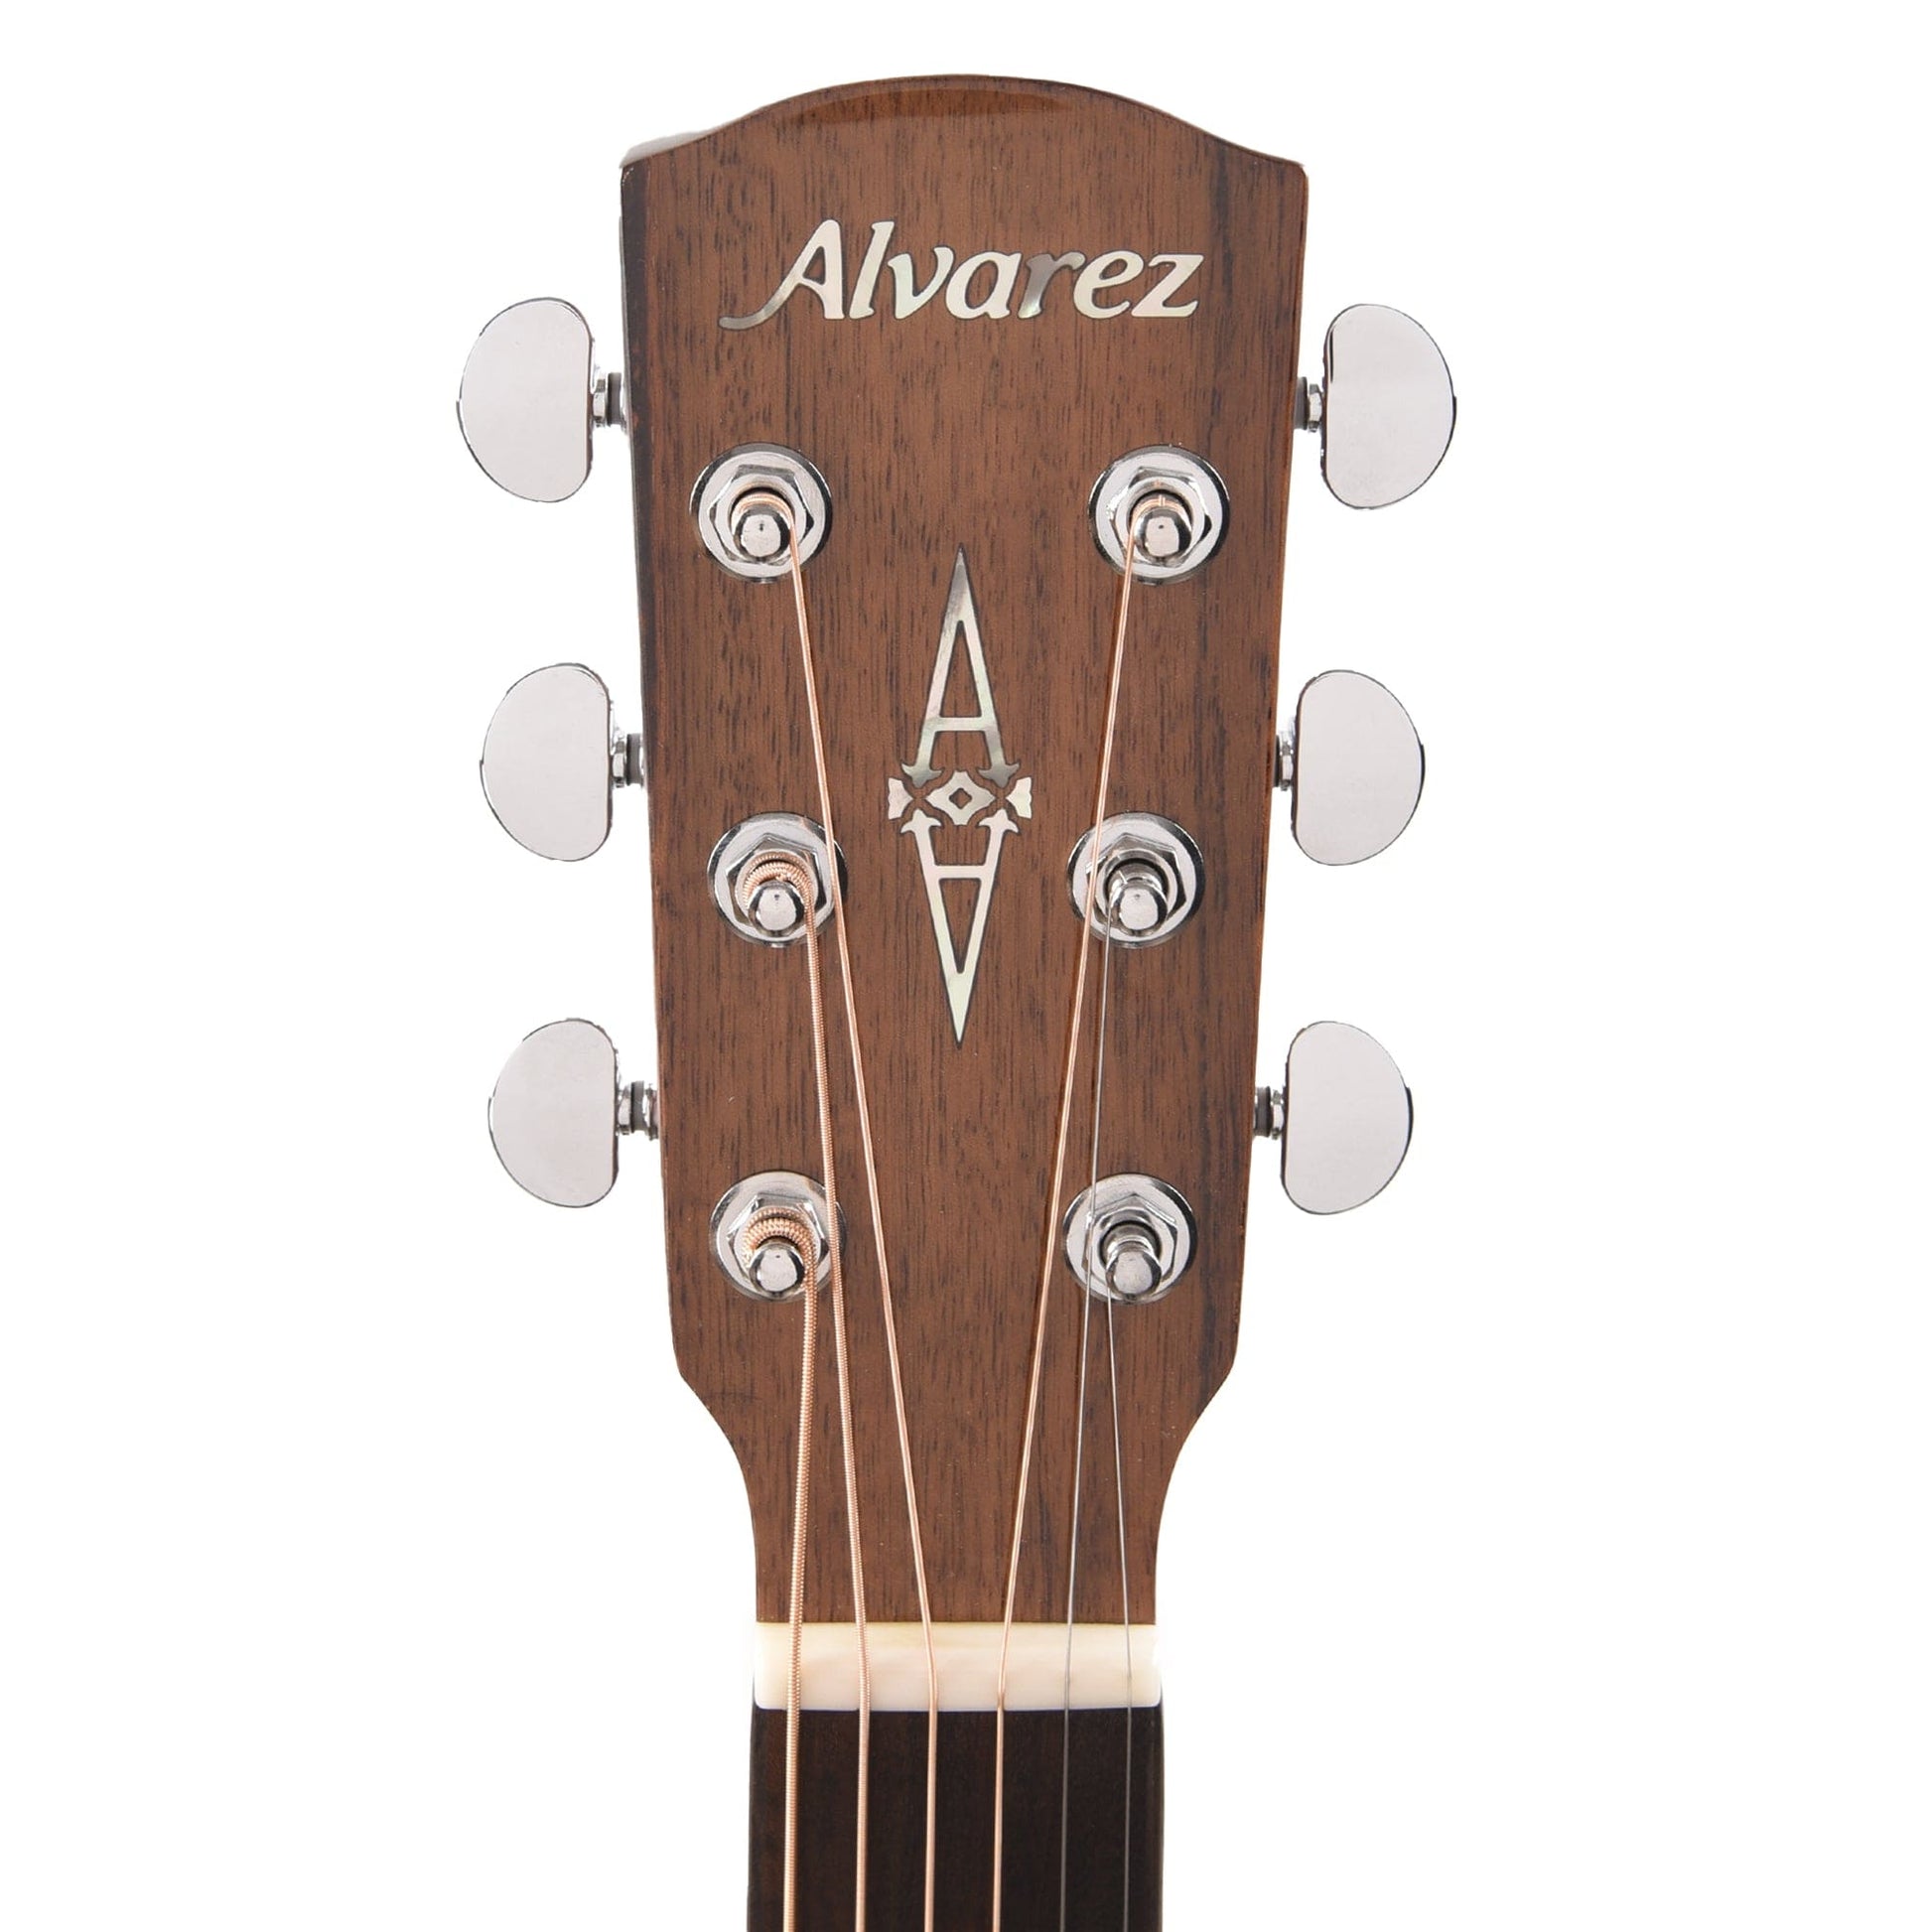 Alvarez ADE90CEAR Artist Elite Acoustic Guitar Natural Gloss Acoustic Guitars / Dreadnought